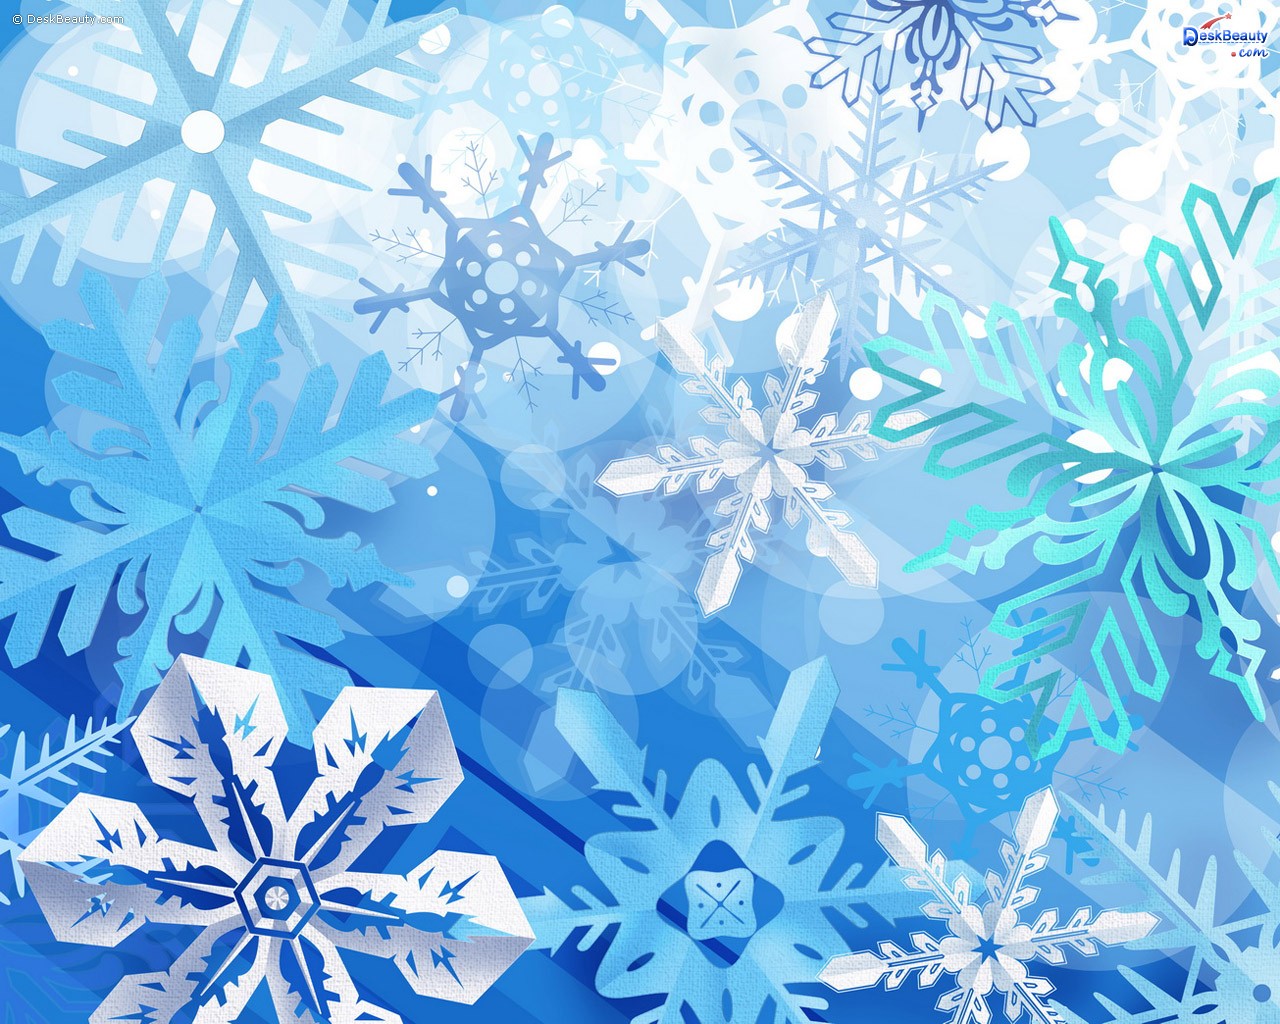 Рождественский и Новогодние текстуры, Новый год, рождество текстура, Christmas and New Year texture background